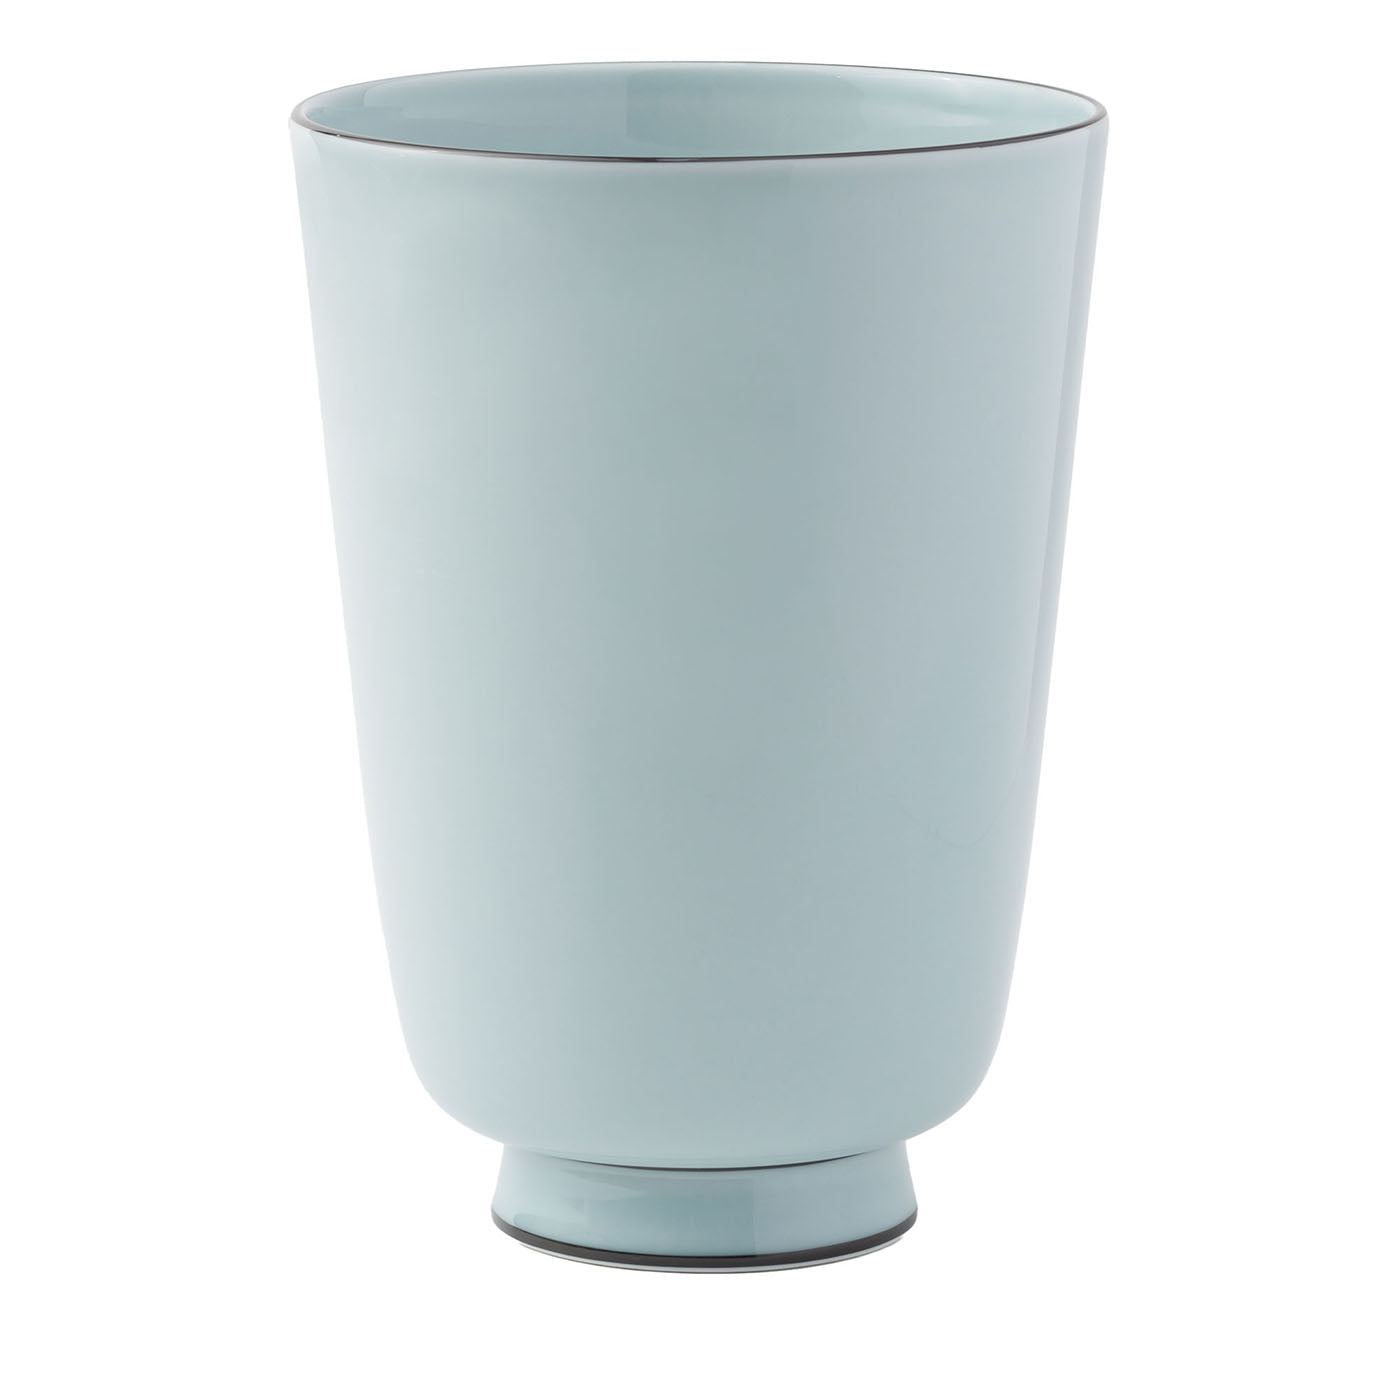 Celadon Large Porcelain Vase - Main view